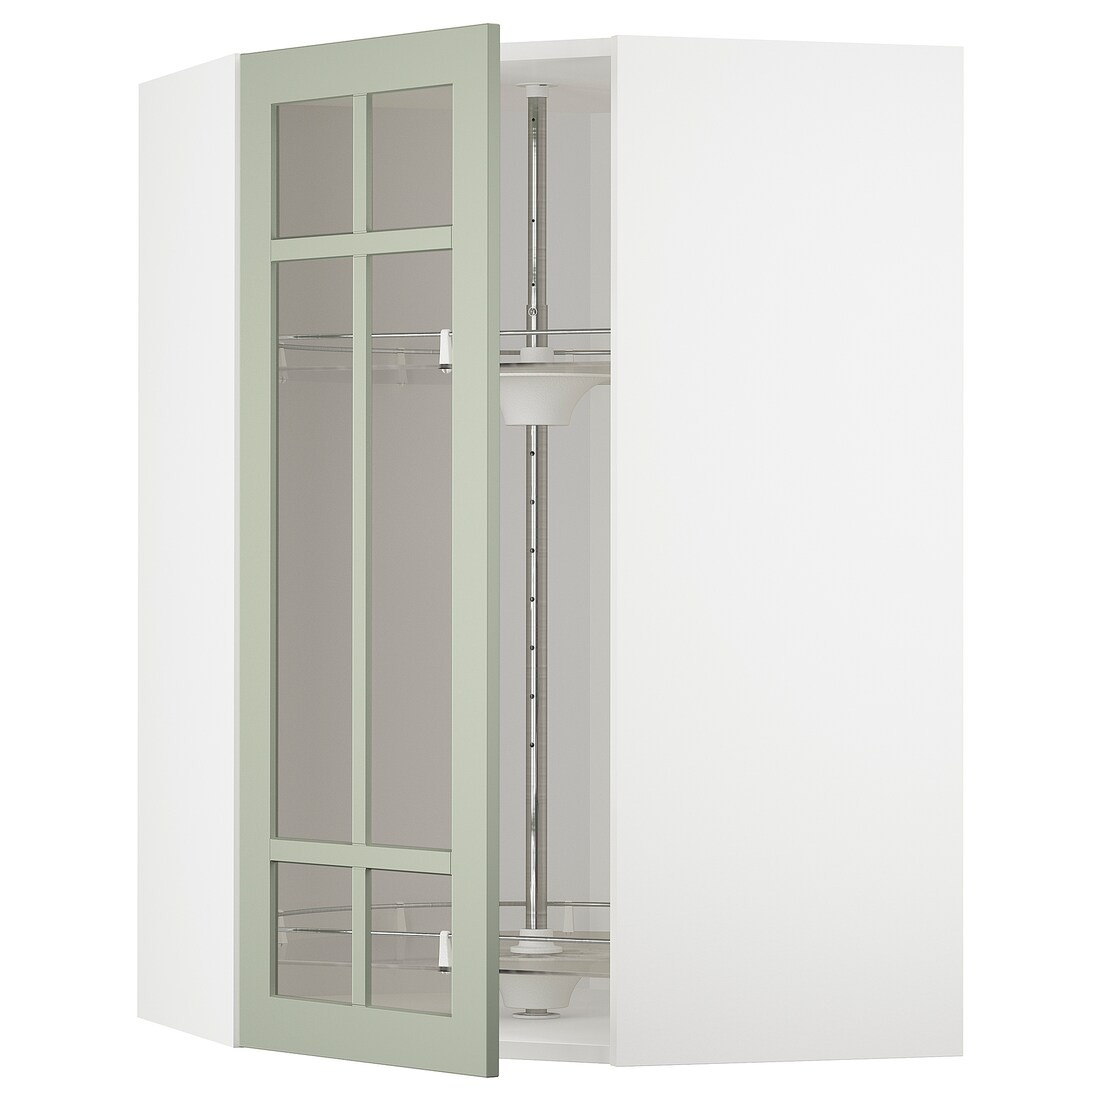 METOD МЕТОД Кутова настінна шафа з каруселлю / скляні двері, білий / Stensund світло-зелений, 68x100 см